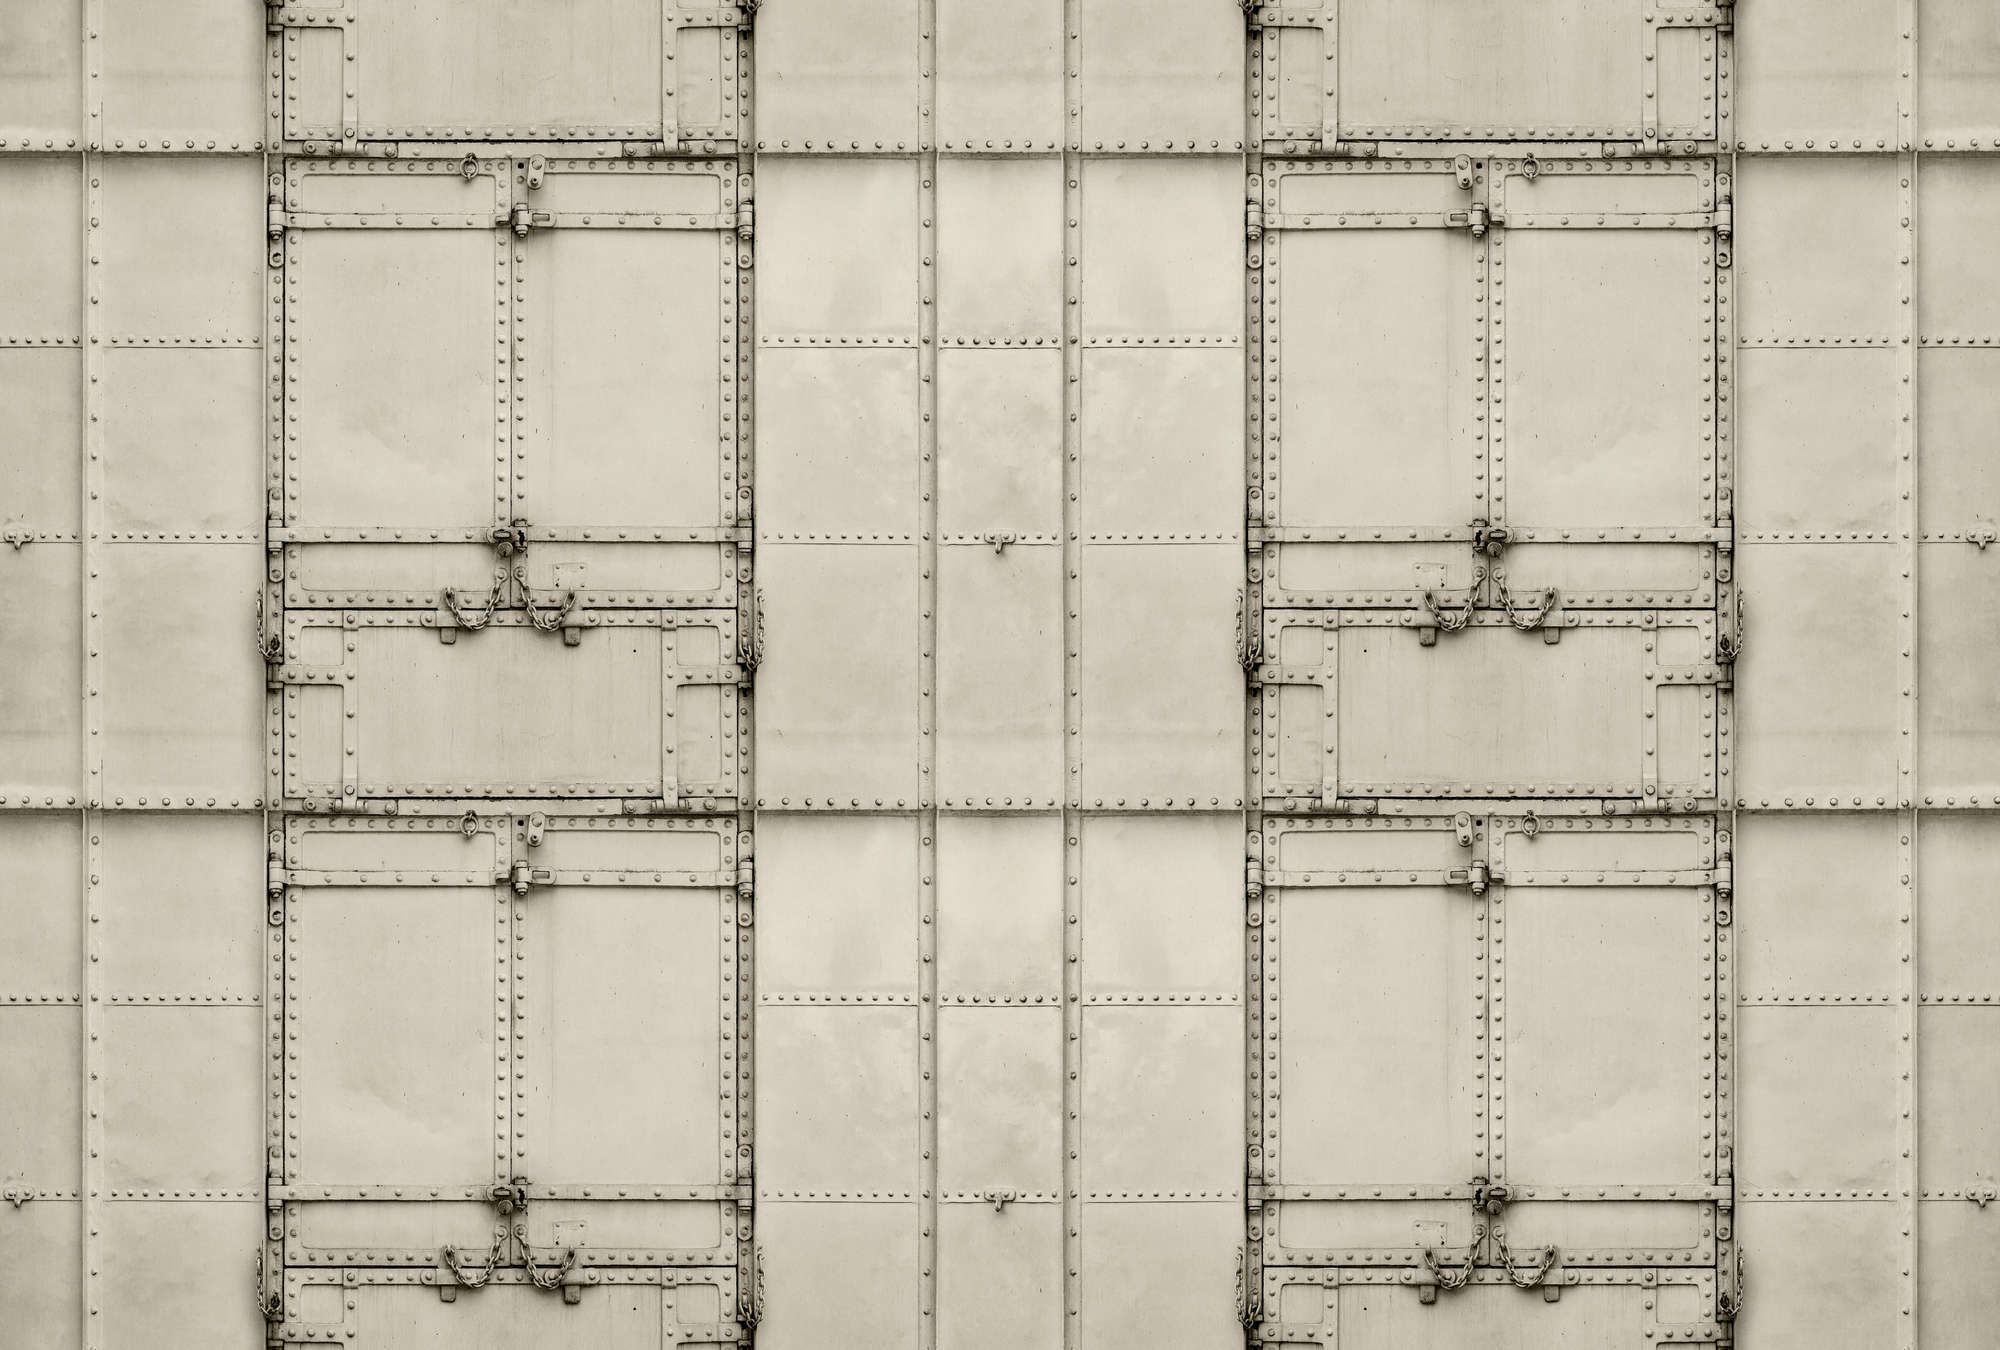             papier peint en papier panoramique »madurai« - design patchwork avec plaques métalliques avec rivets & chaînes - intissé légèrement structuré
        